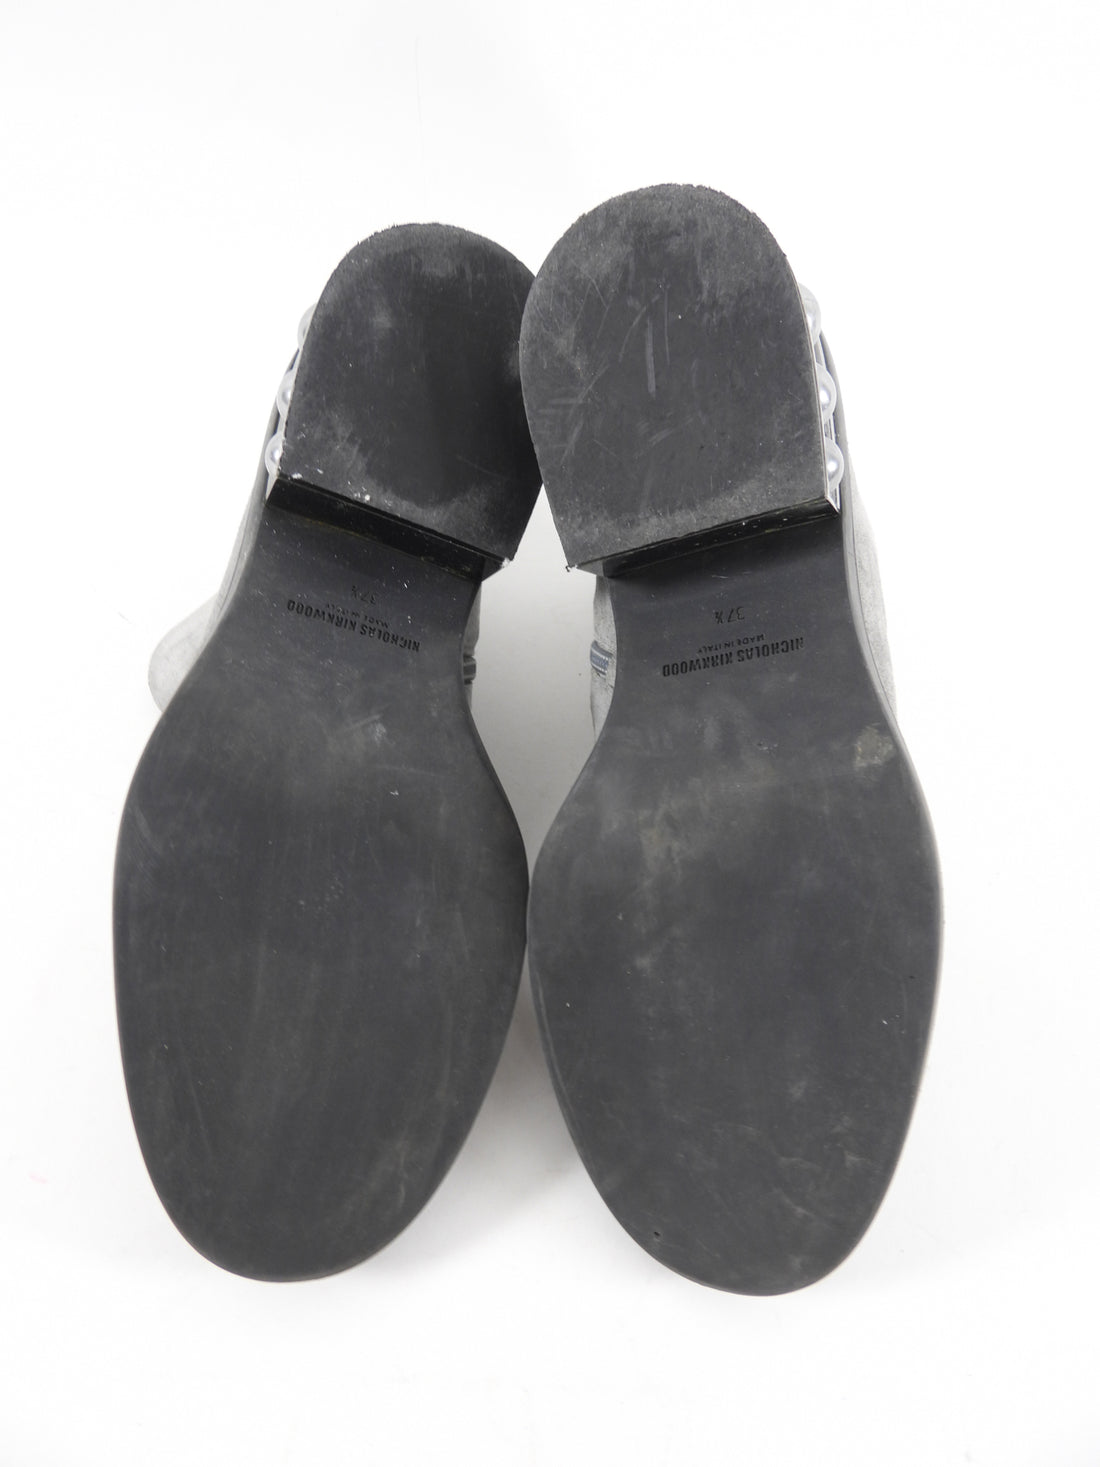 Nicholas Kirkwood Grey Suede Pearl Heel Ankle Boot - 37.5 / 7.5